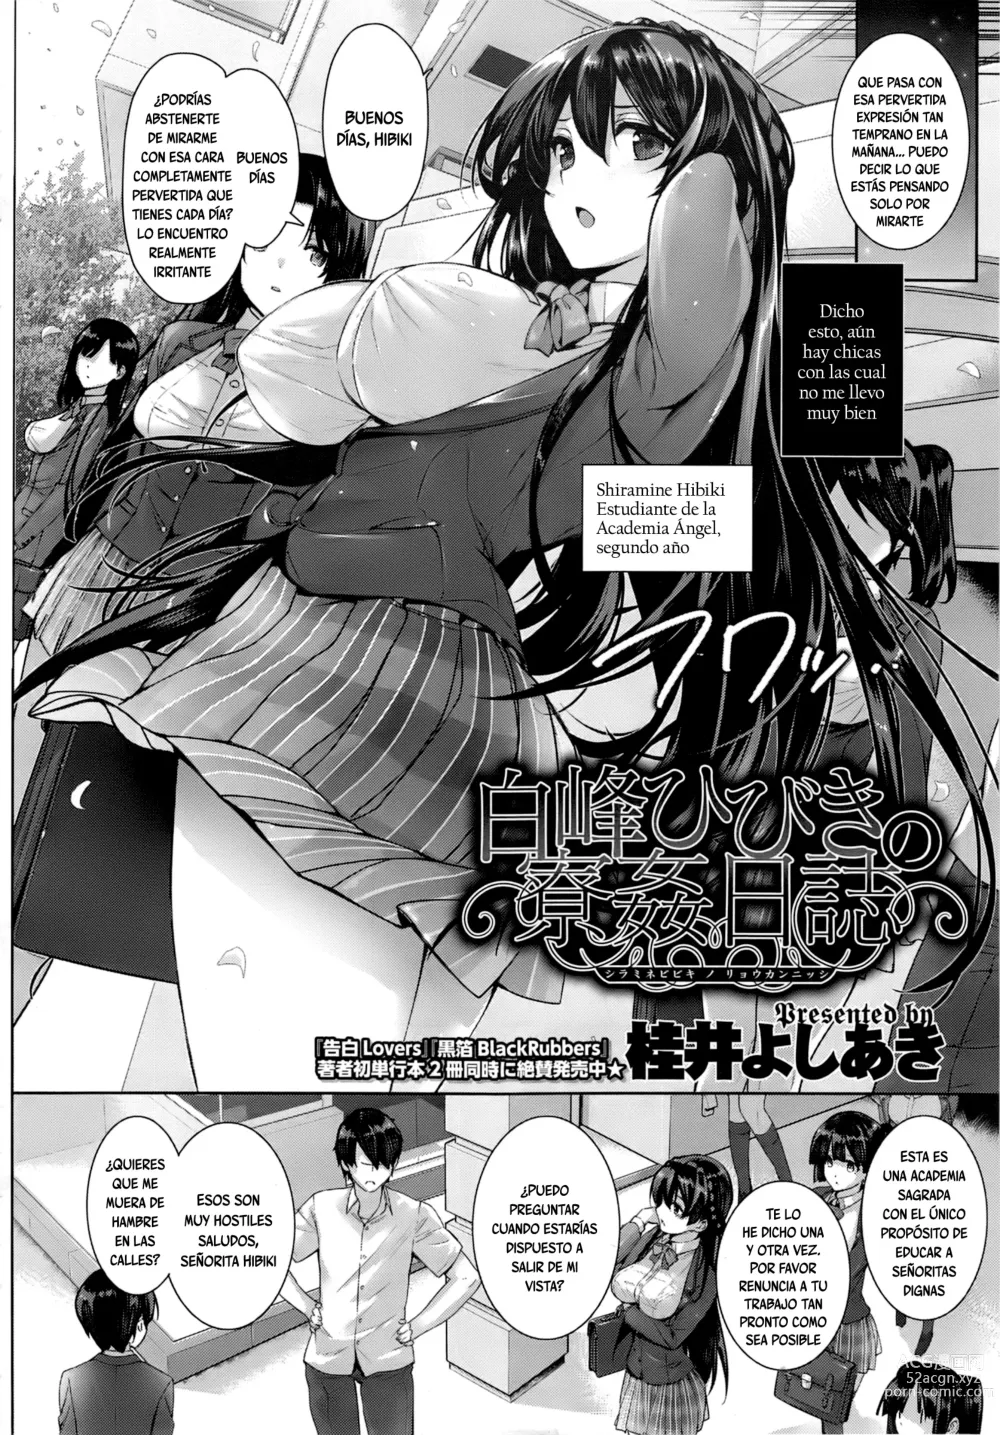 Page 4 of manga Amatsuka Gakuen no Ryoukan Seikatsu Ch. 1-2, 3.5-5.8